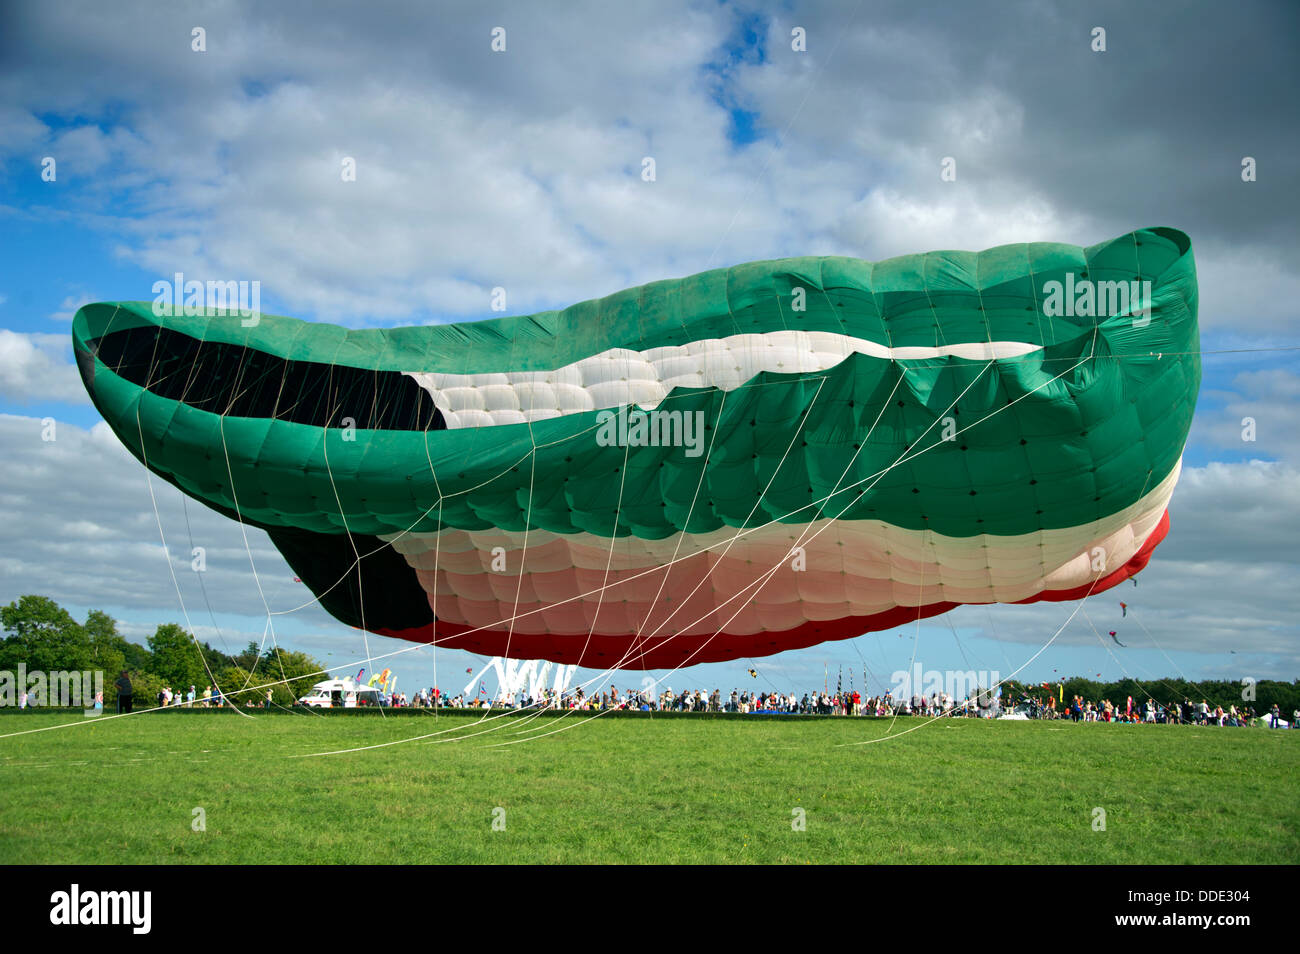 Bristol International Kite Festival, einschließlich des weltweit größten Drachen in Form der kuwaitischen Flagge. Stockfoto